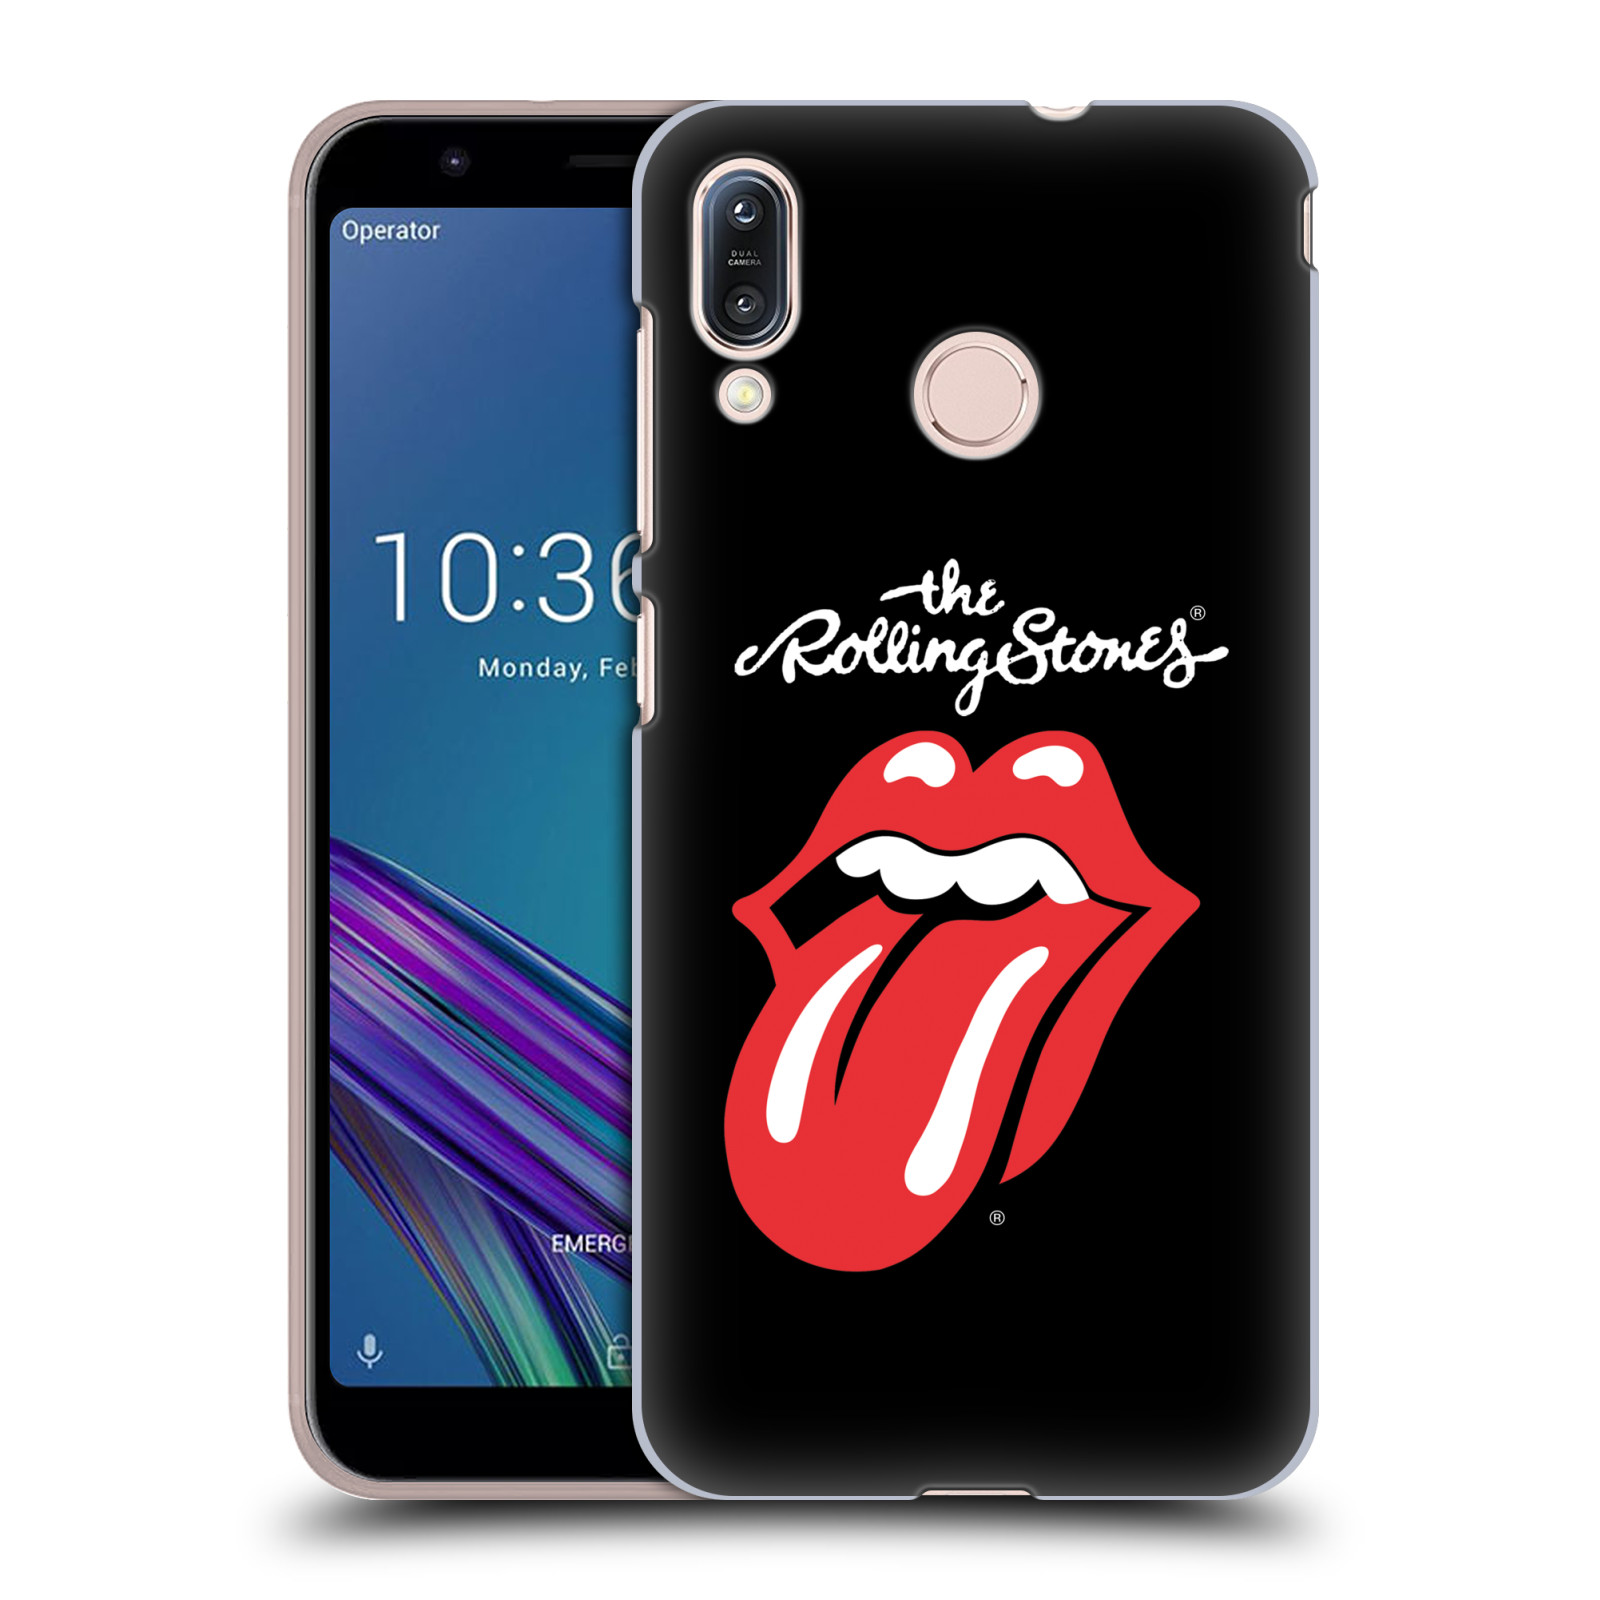 Pouzdro na mobil Asus Zenfone Max M1 (ZB555KL) - HEAD CASE - rocková skupina Rolling Stones znak černá a červená